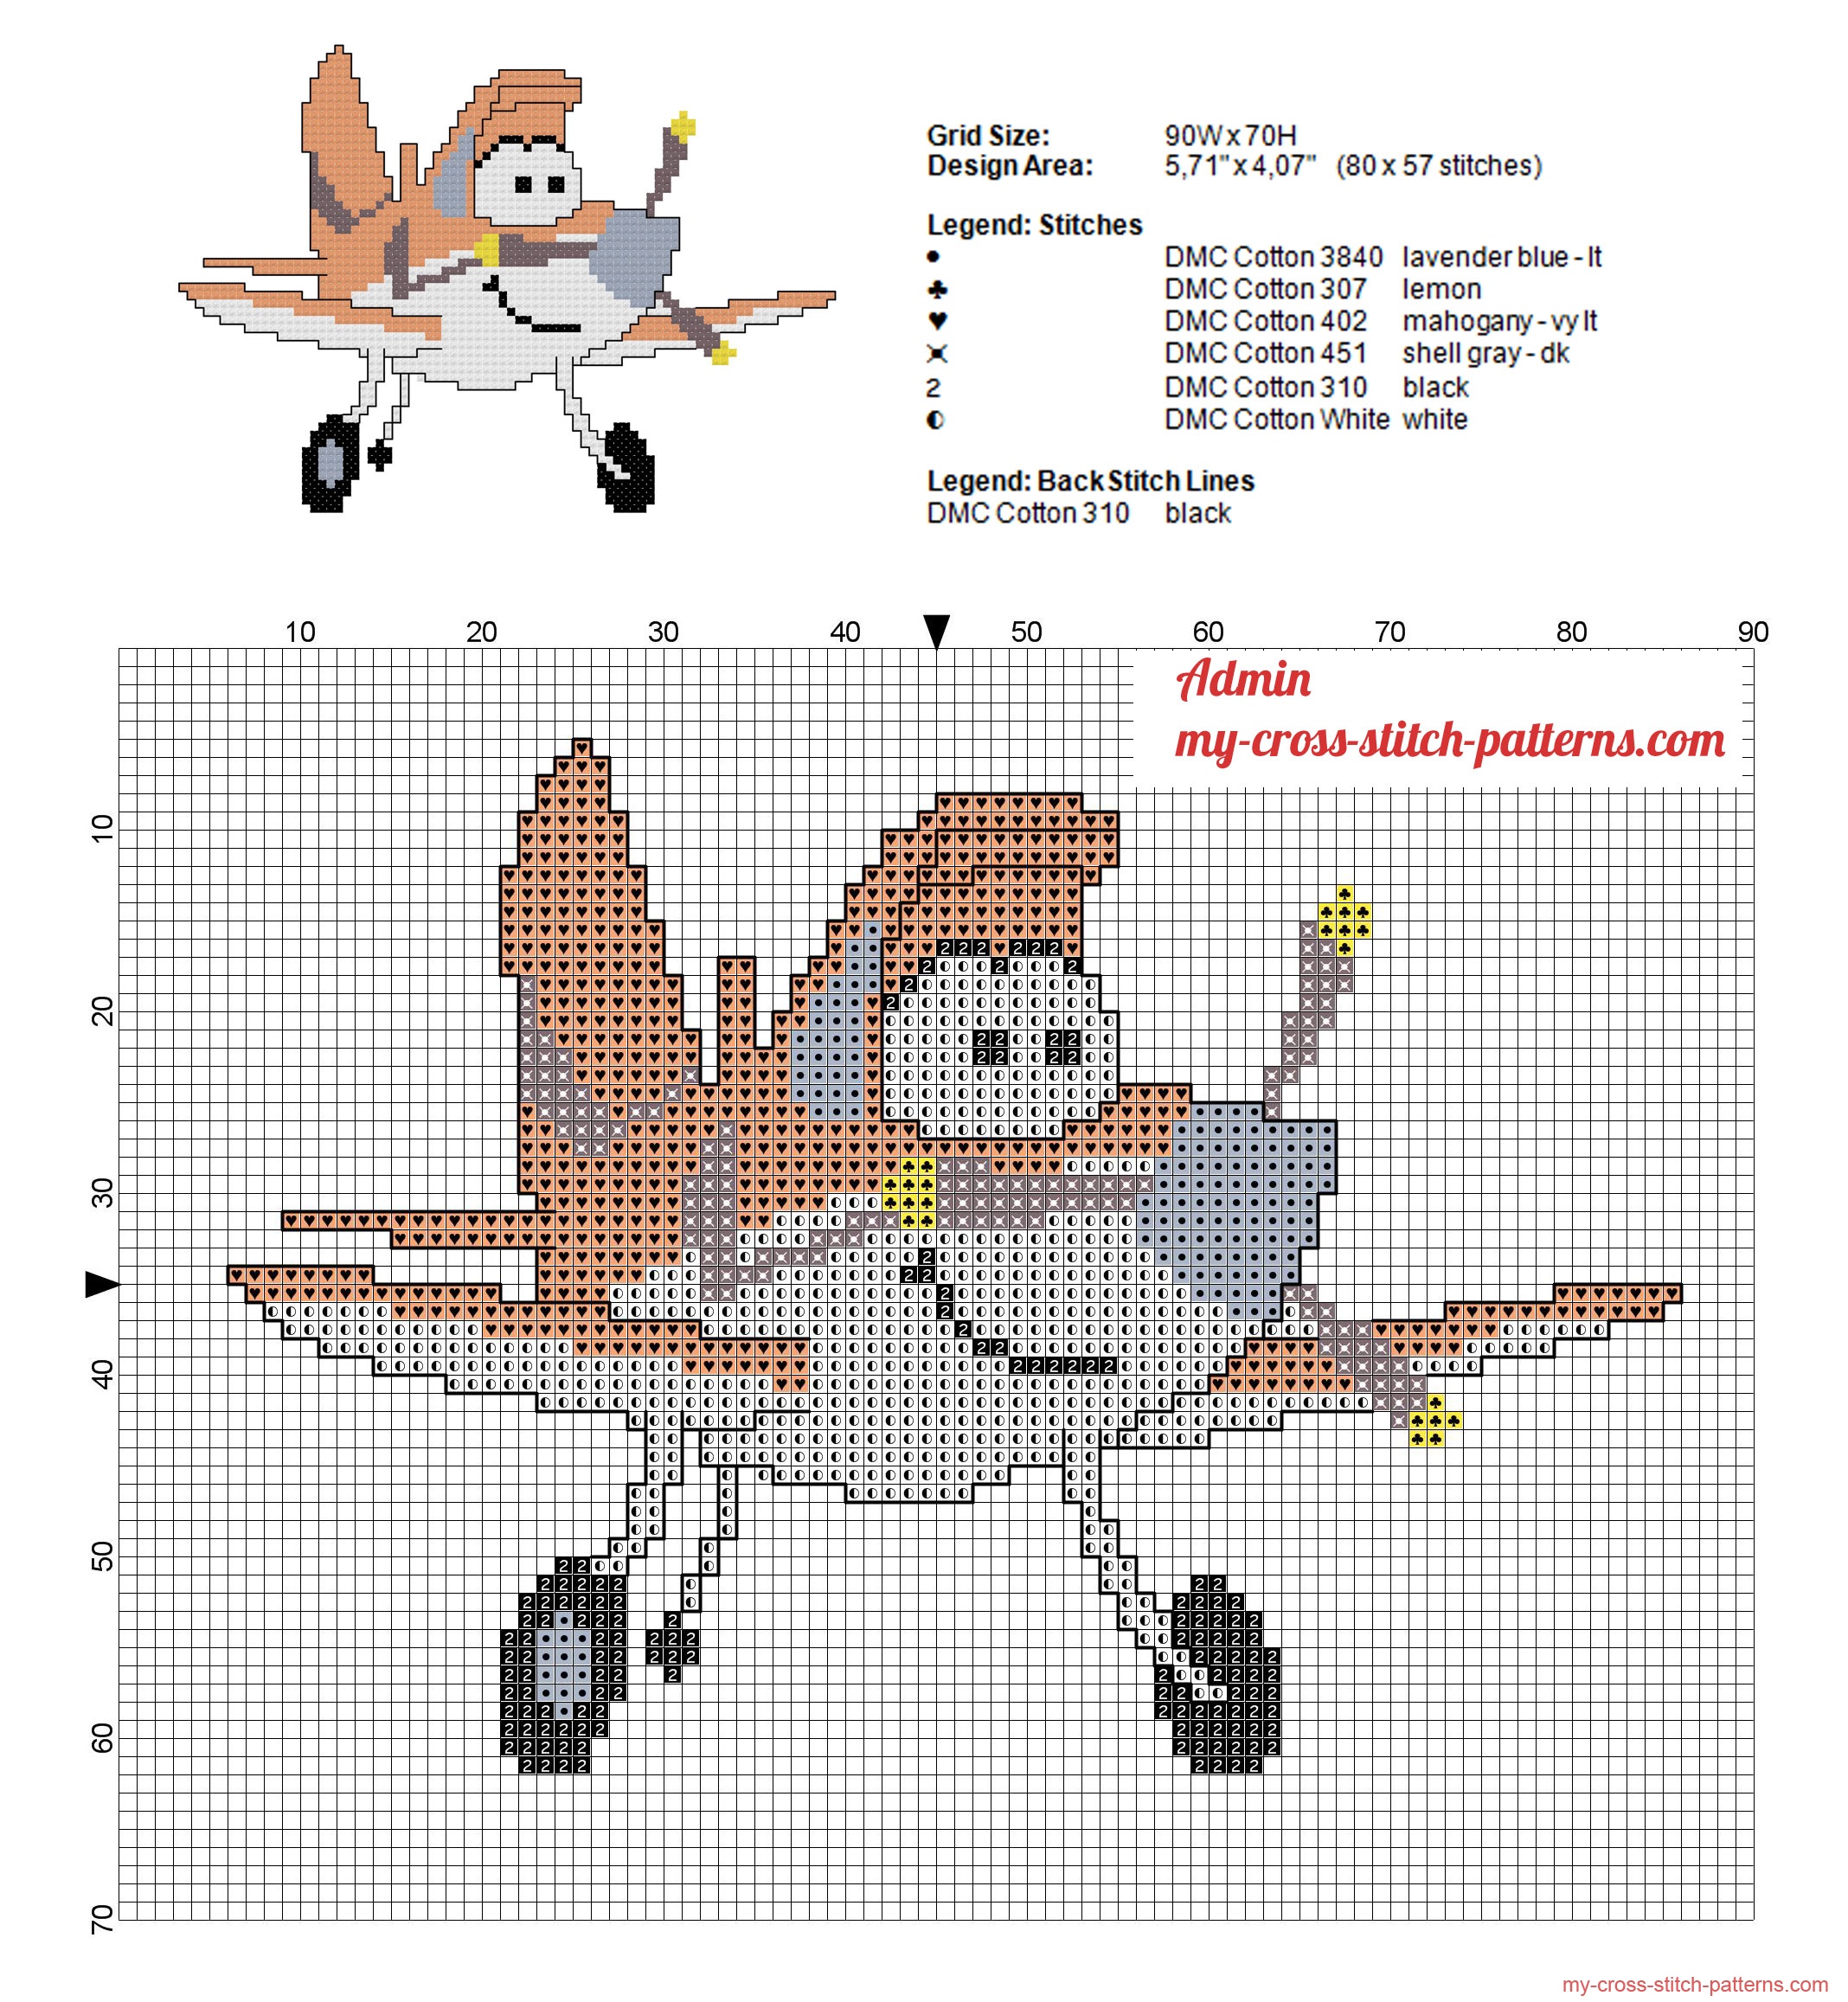 special_dusty_crophopper_disney_planes_cross_stitch_pattern